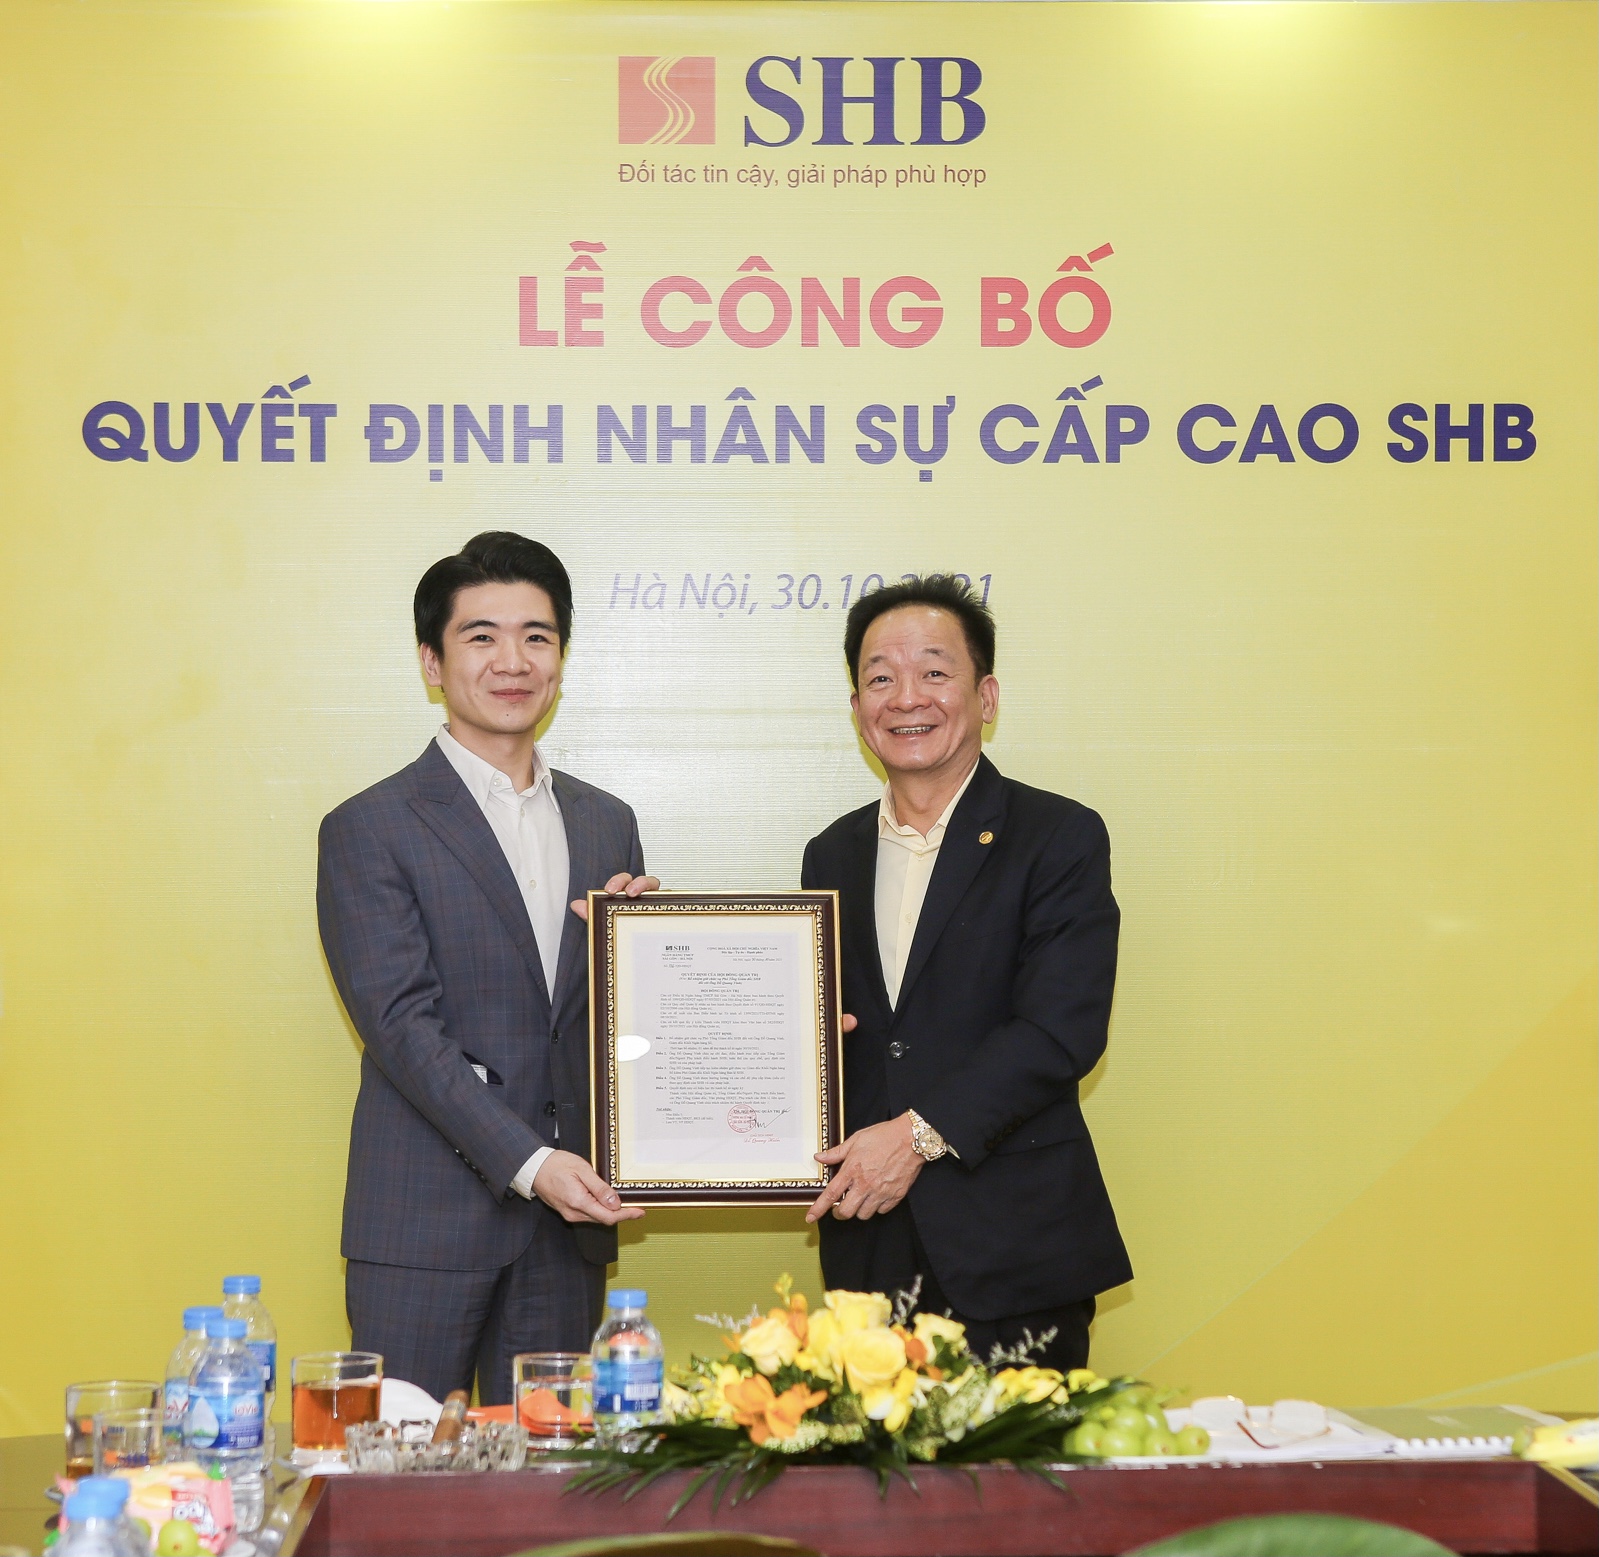 Con trai bầu Hiển được bổ nhiệm làm Phó Tổng Giám đốc SHB - Ảnh 1.